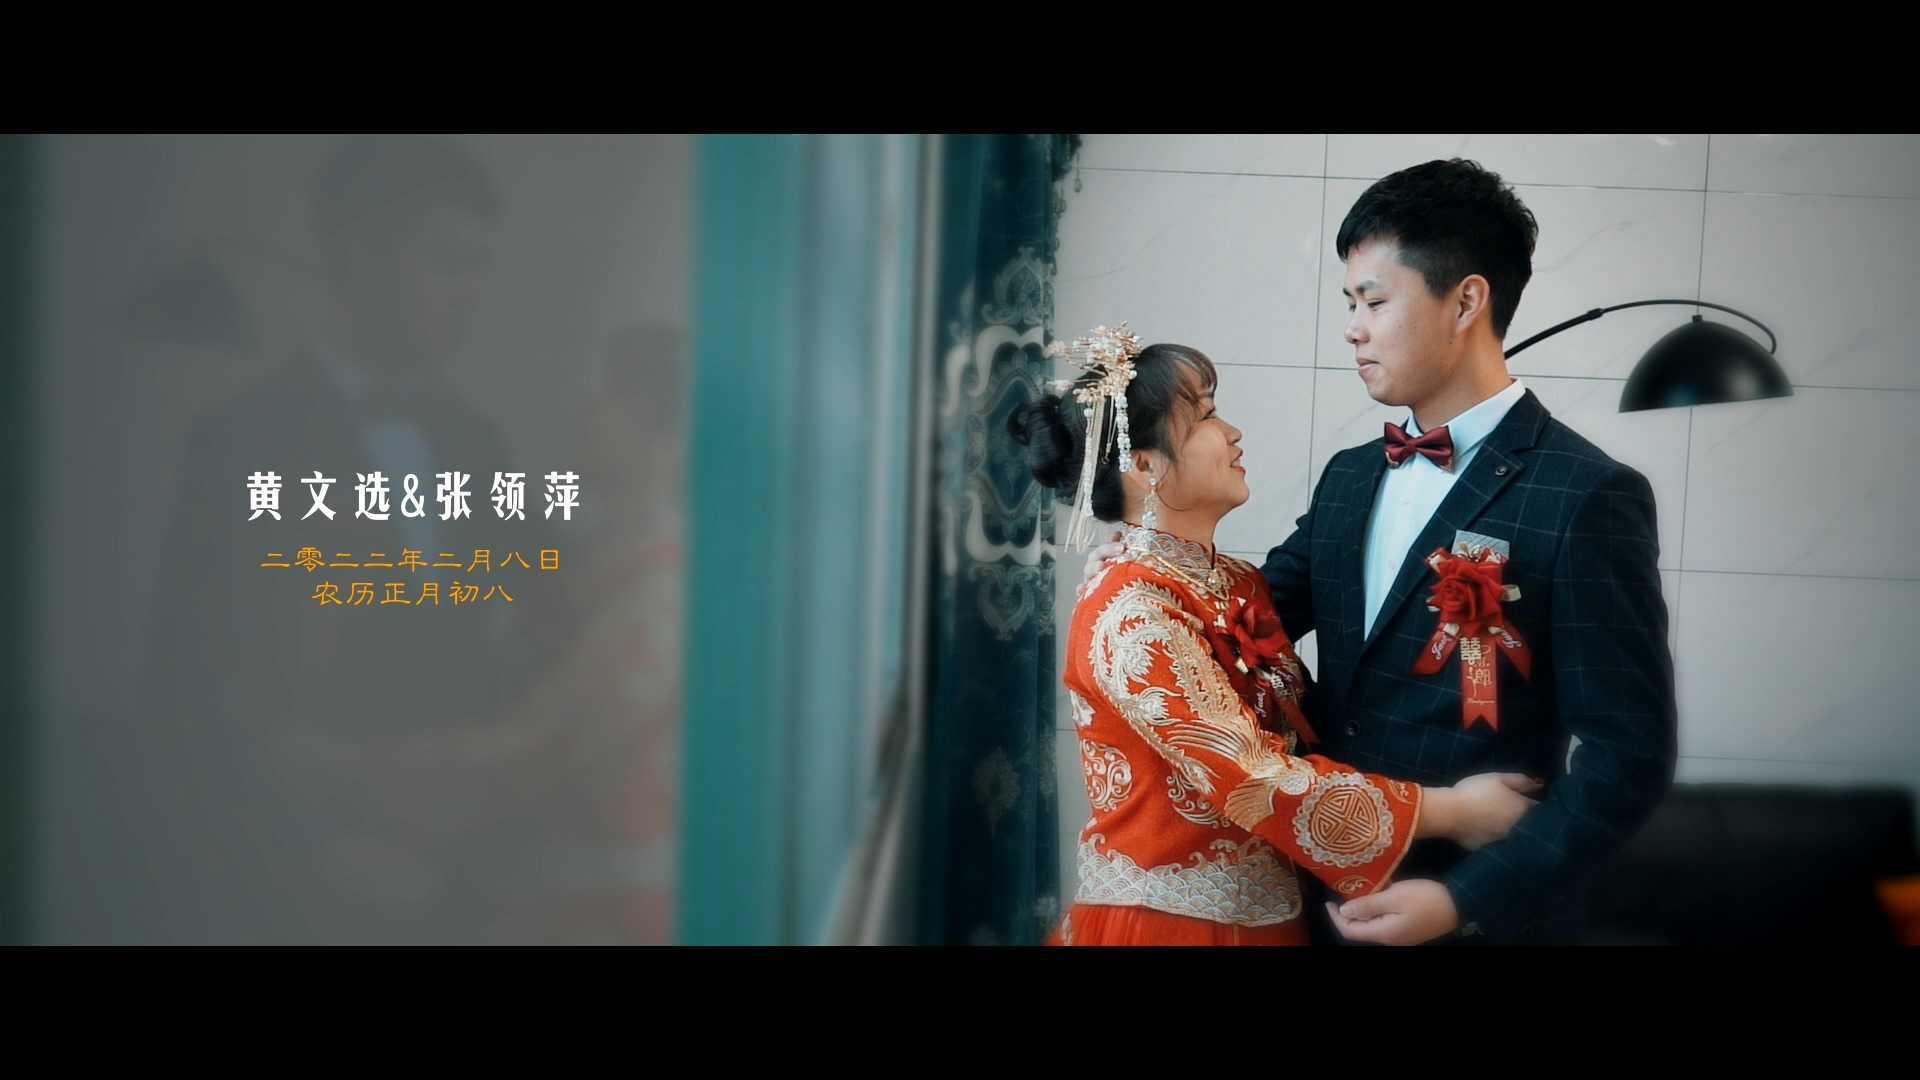 黄文选&张领萍 婚礼纪实